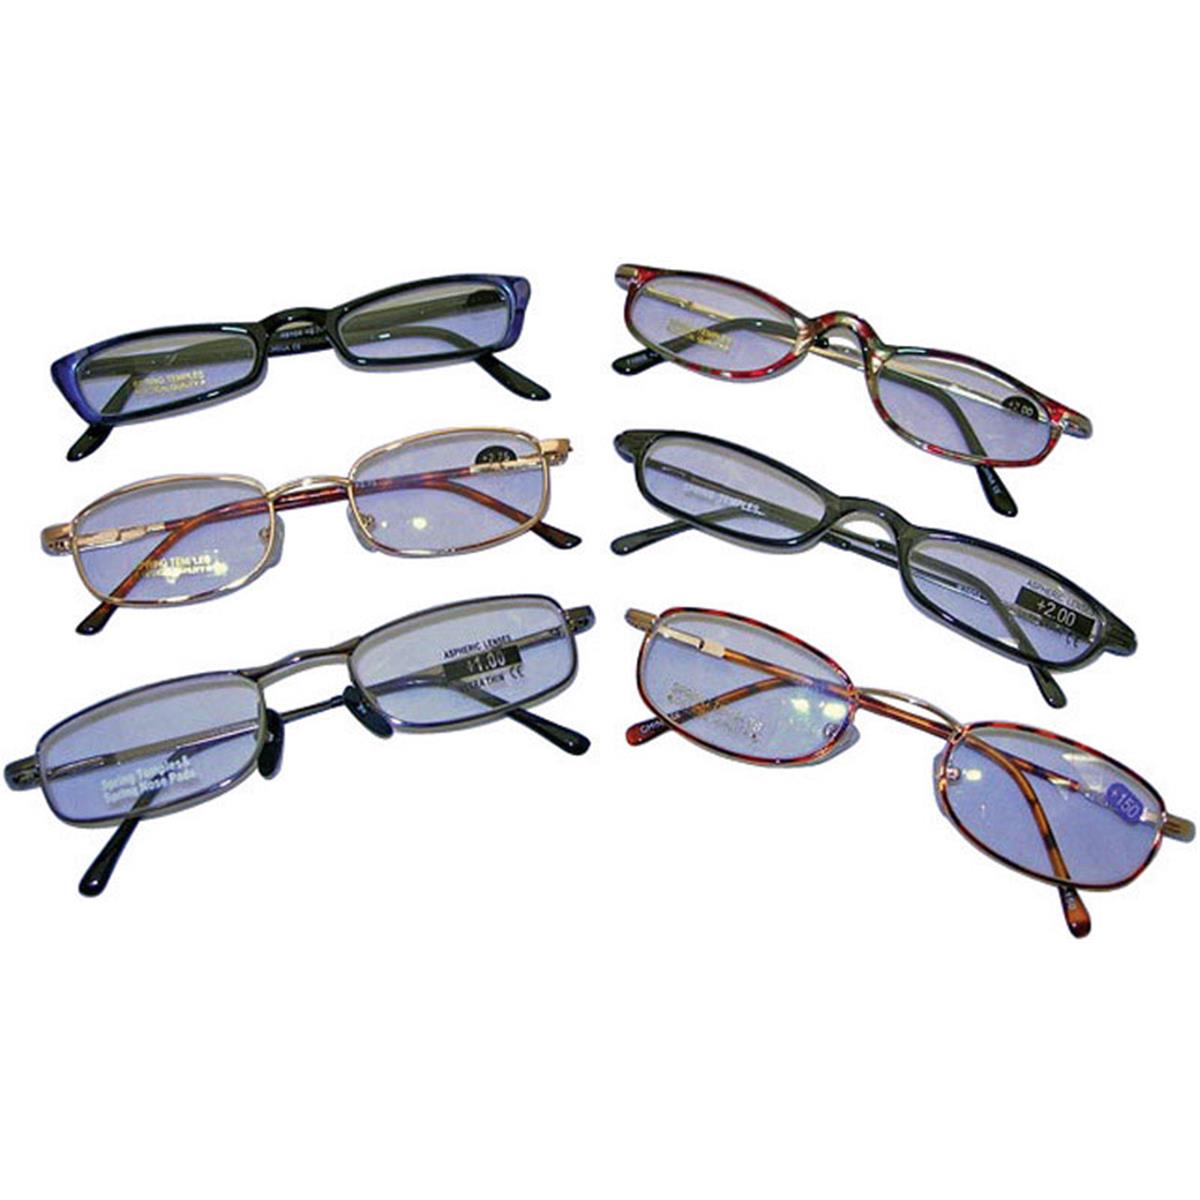 Picture of Diamond Visions RG-399 3.99 Premium Reading Glasses